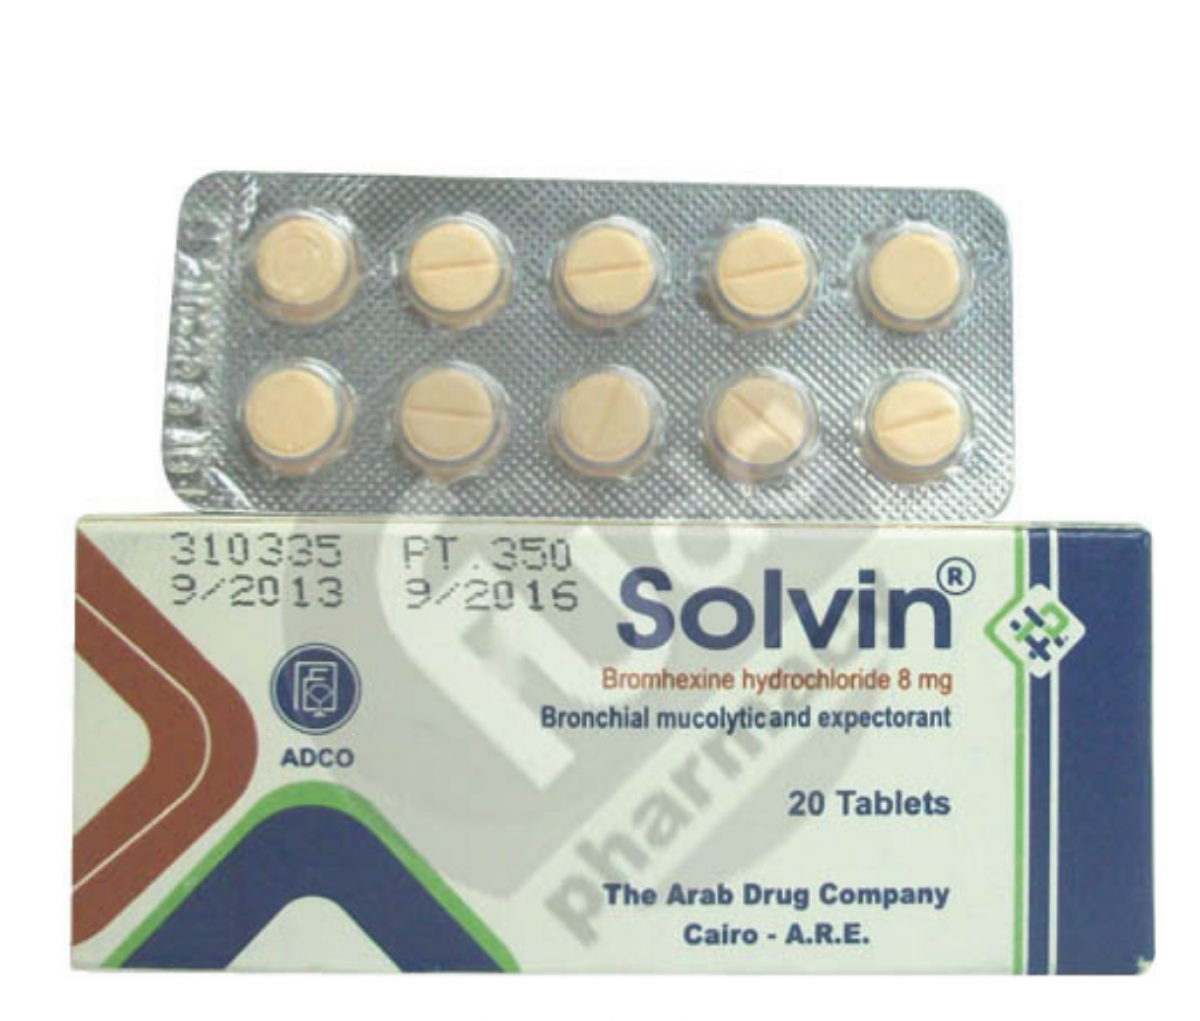 Solvin 8mg Tablet